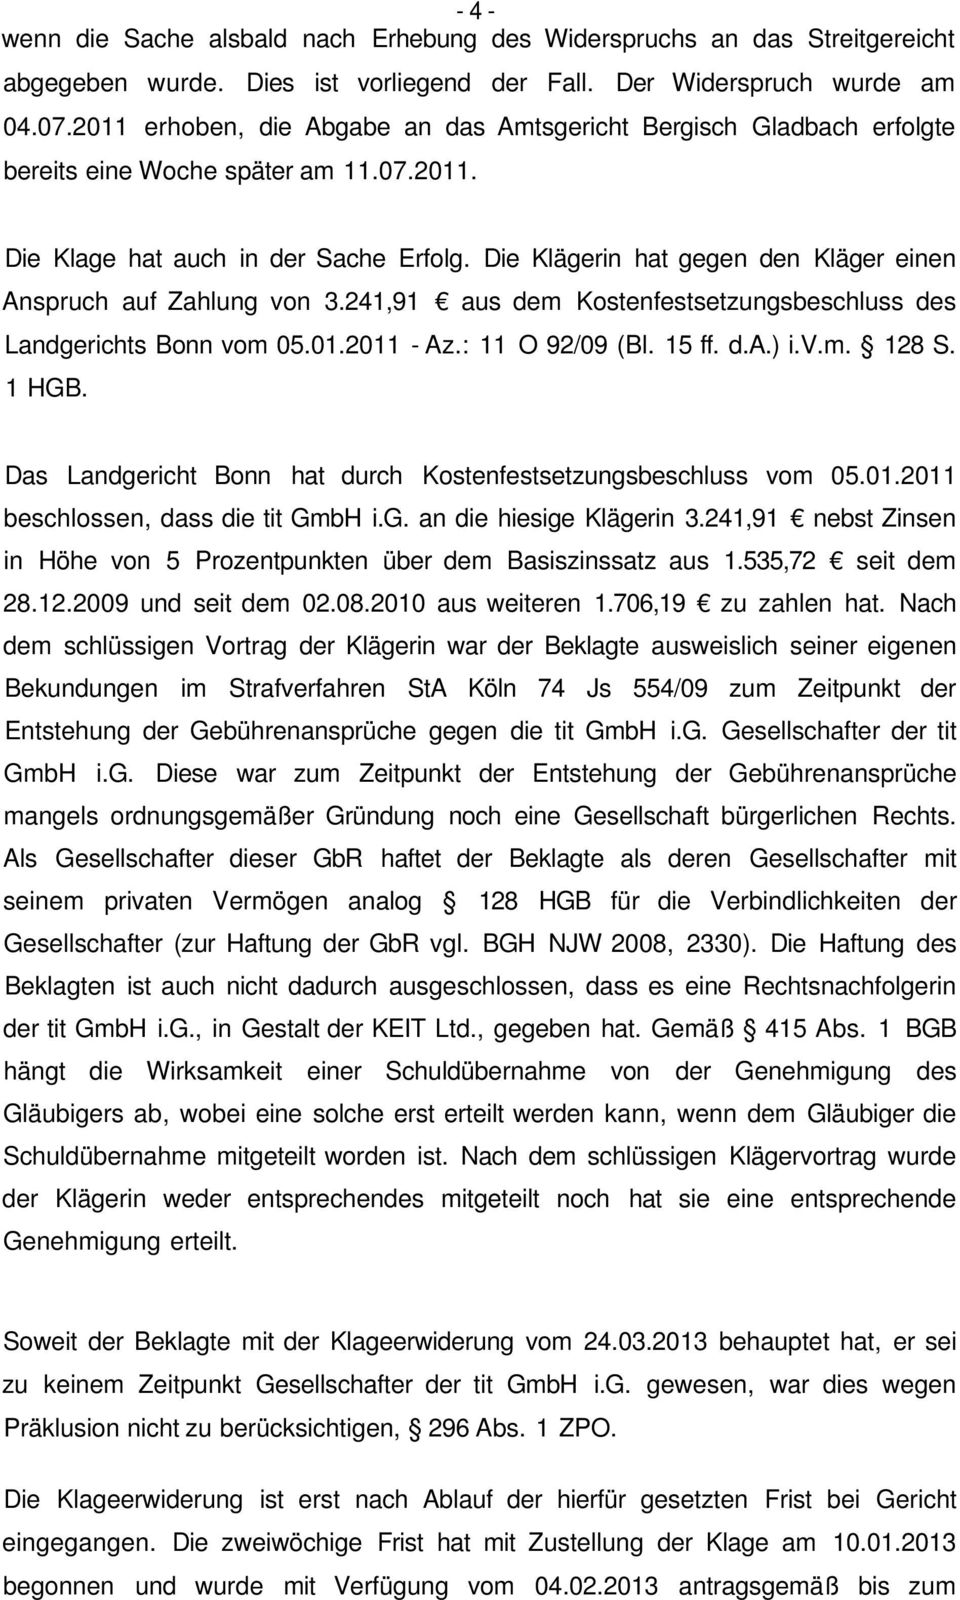 Die Klägerin hat gegen den Kläger einen Anspruch auf Zahlung von 3.241,91 aus dem Kostenfestsetzungsbeschluss des Landgerichts Bonn vom 05.01.2011 - Az.: 11 O 92/09 (Bl. 15 ff. d.a.) i.v.m. 128 S.